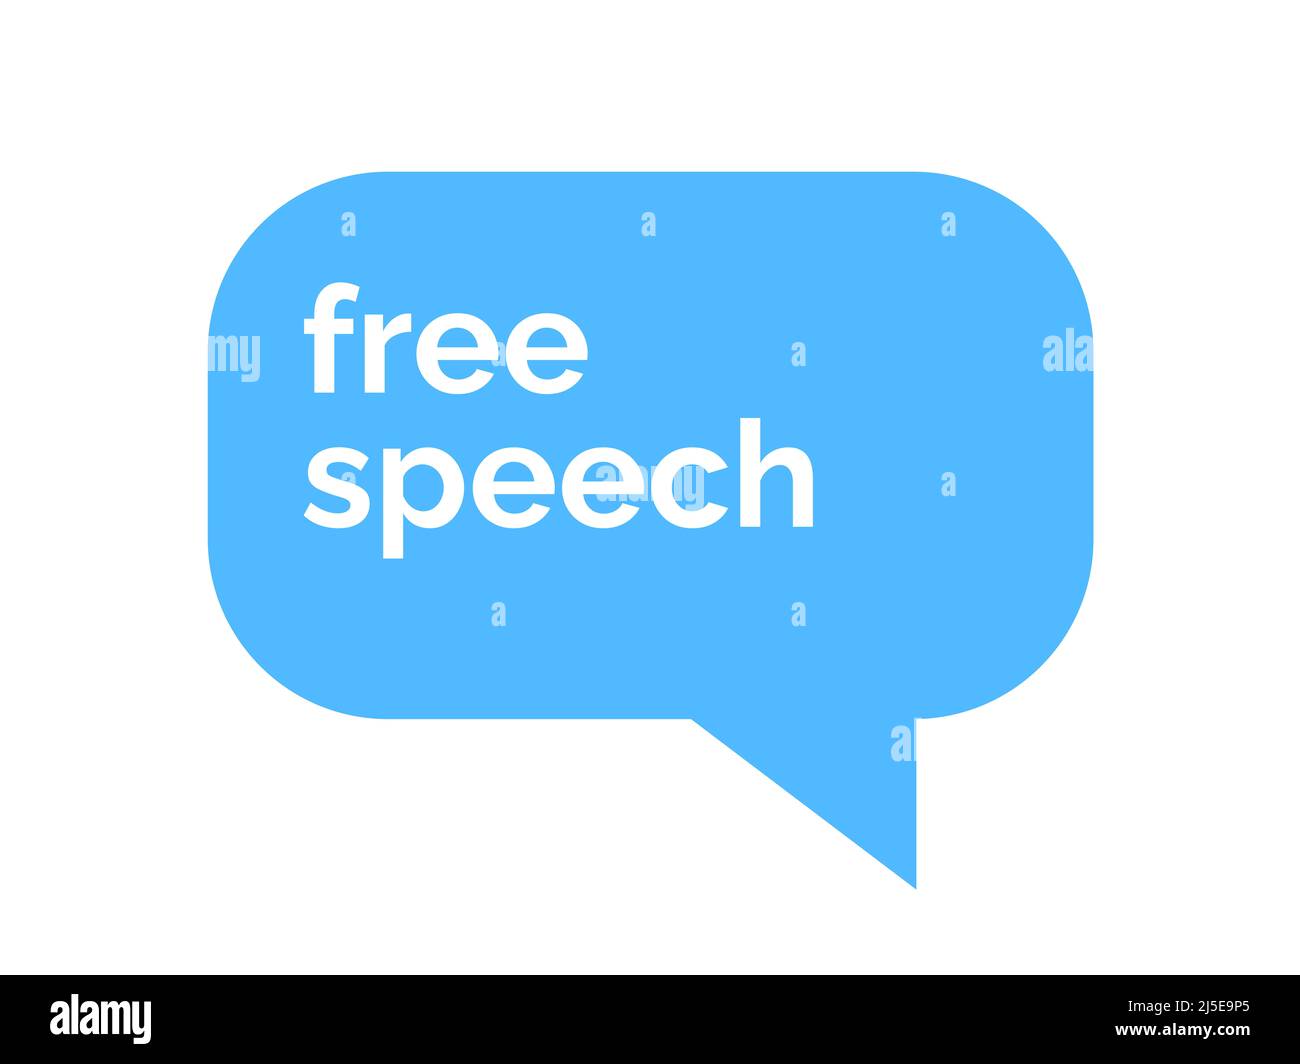 Libertad de expresión y libertad de expresión - posibilidad de hablar, hablar, comunicar, discutir libremente. Discusión abierta, comunicación. Texto y símbolo de CO Foto de stock